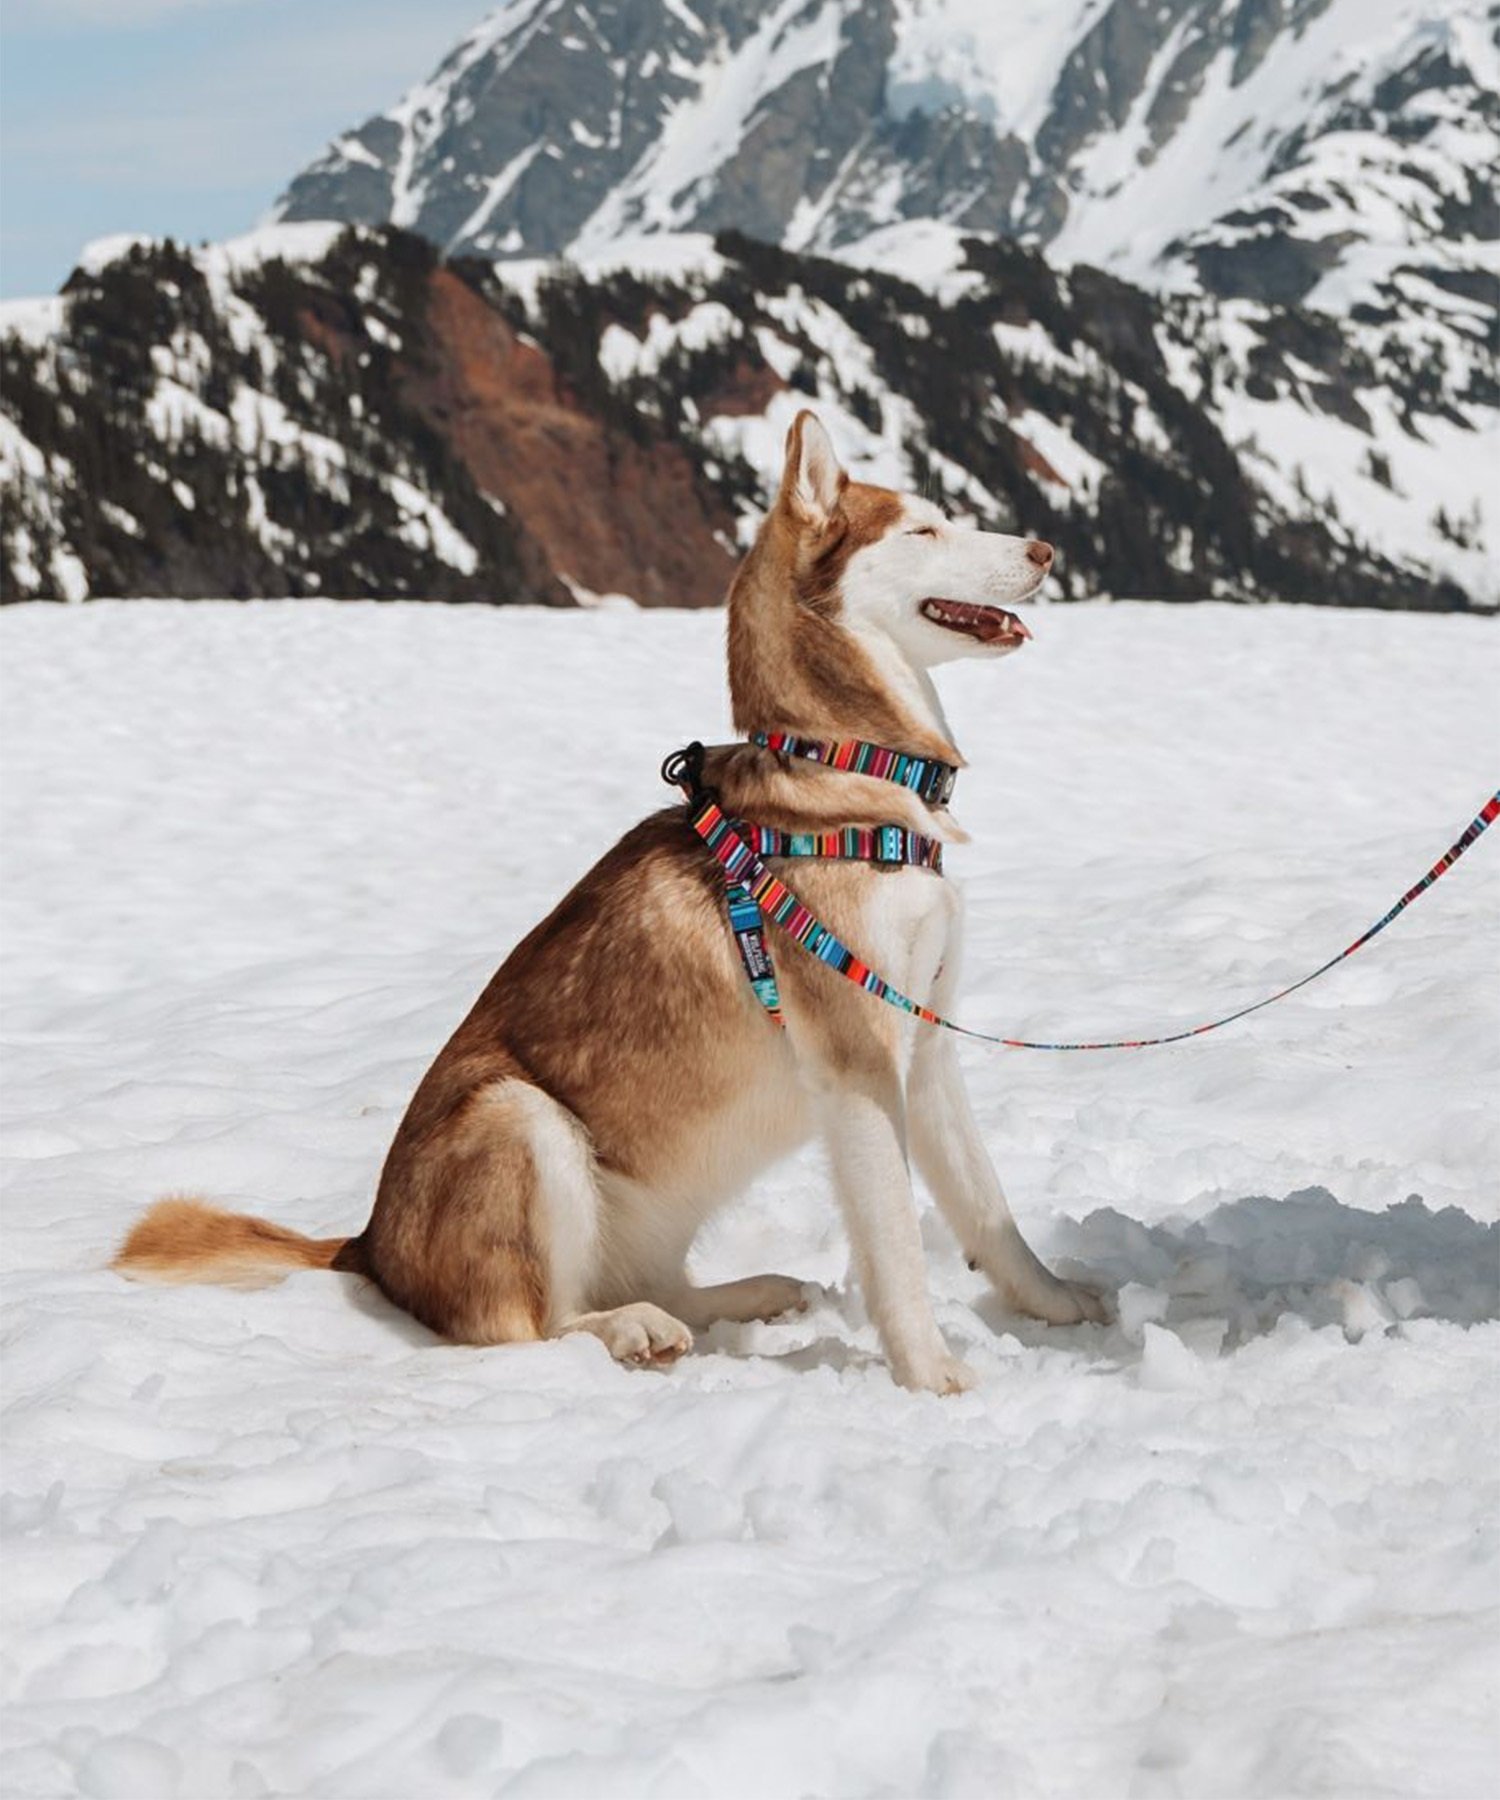 WOLFGANG ウルフギャング 犬用 首輪 Quetzal COLLAR Sサイズ 超小型犬用 小型犬用 ケツァール カラー マルチカラー WC-001-07(MULTI-S)